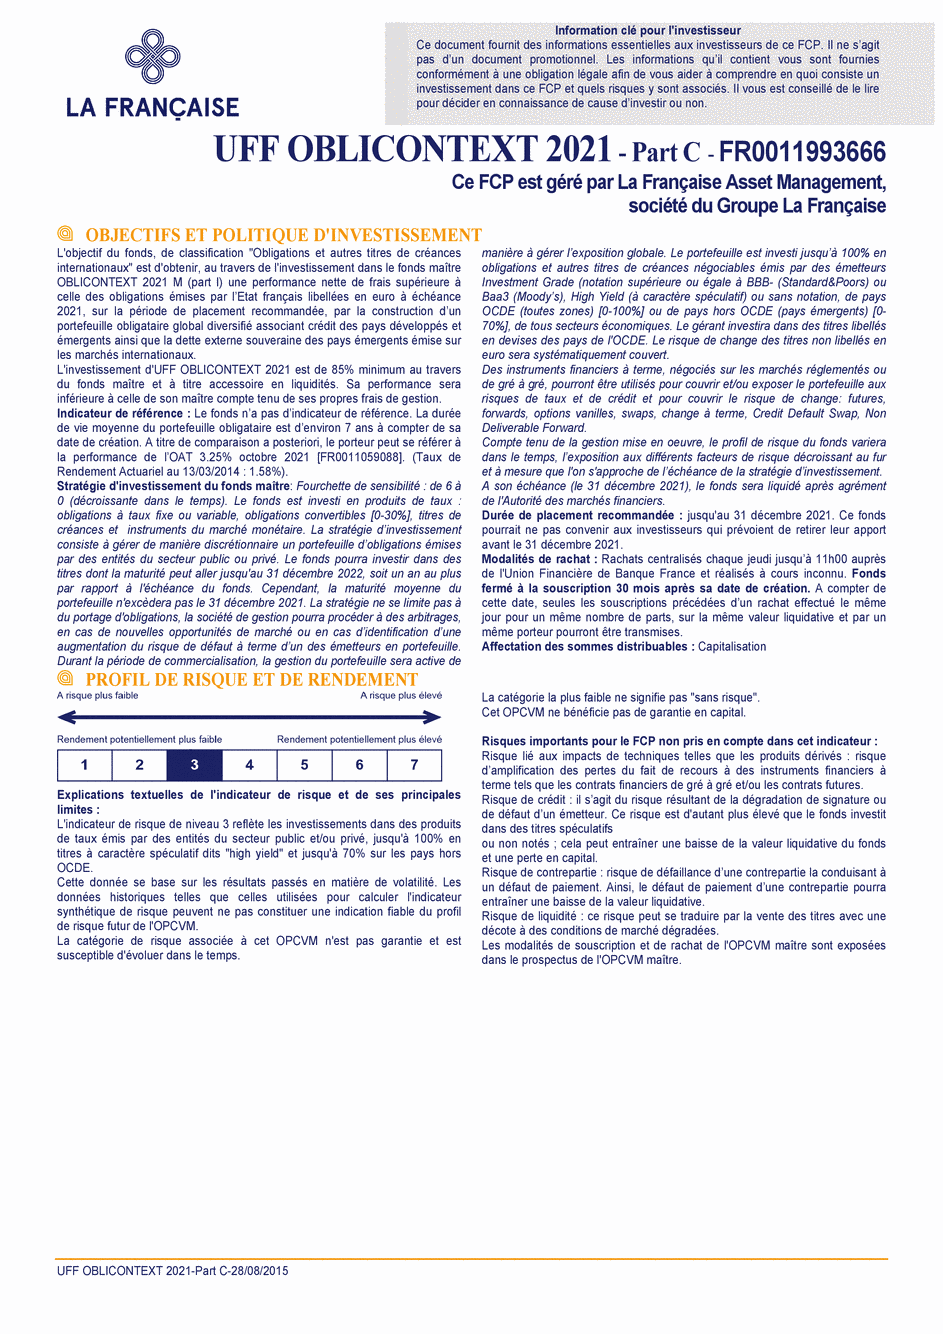 DICI UFF OBLICONTEXT 2021 - Part C - 28/08/2015 - Français